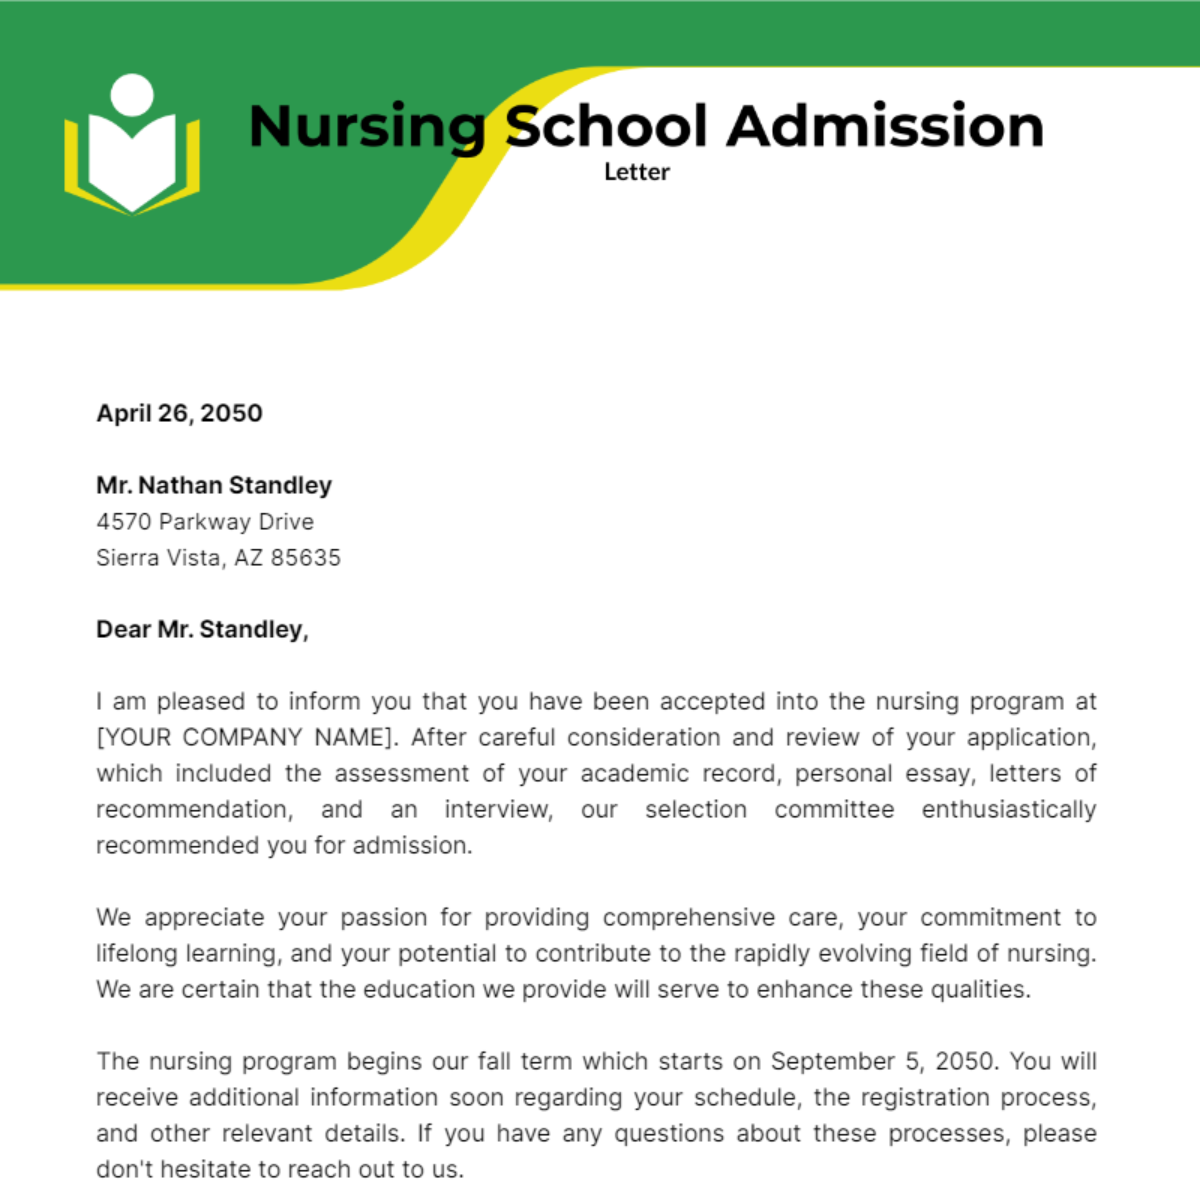 Nursing School Admission Letter Template - Edit Online & Download ...